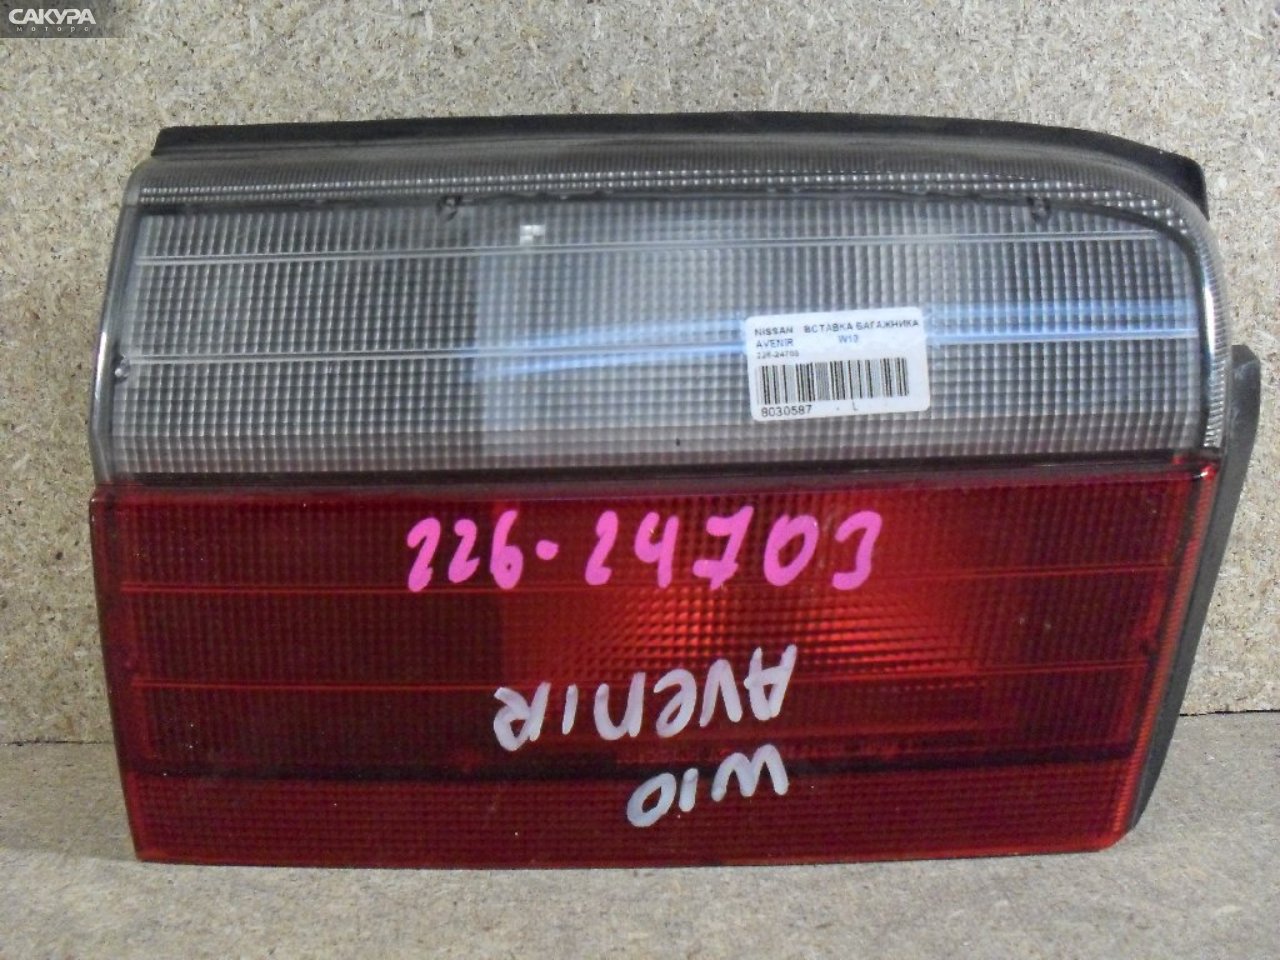 Фонарь вставка багажника левый Nissan Avenir W10 226-24703: купить в Сакура Абакан.